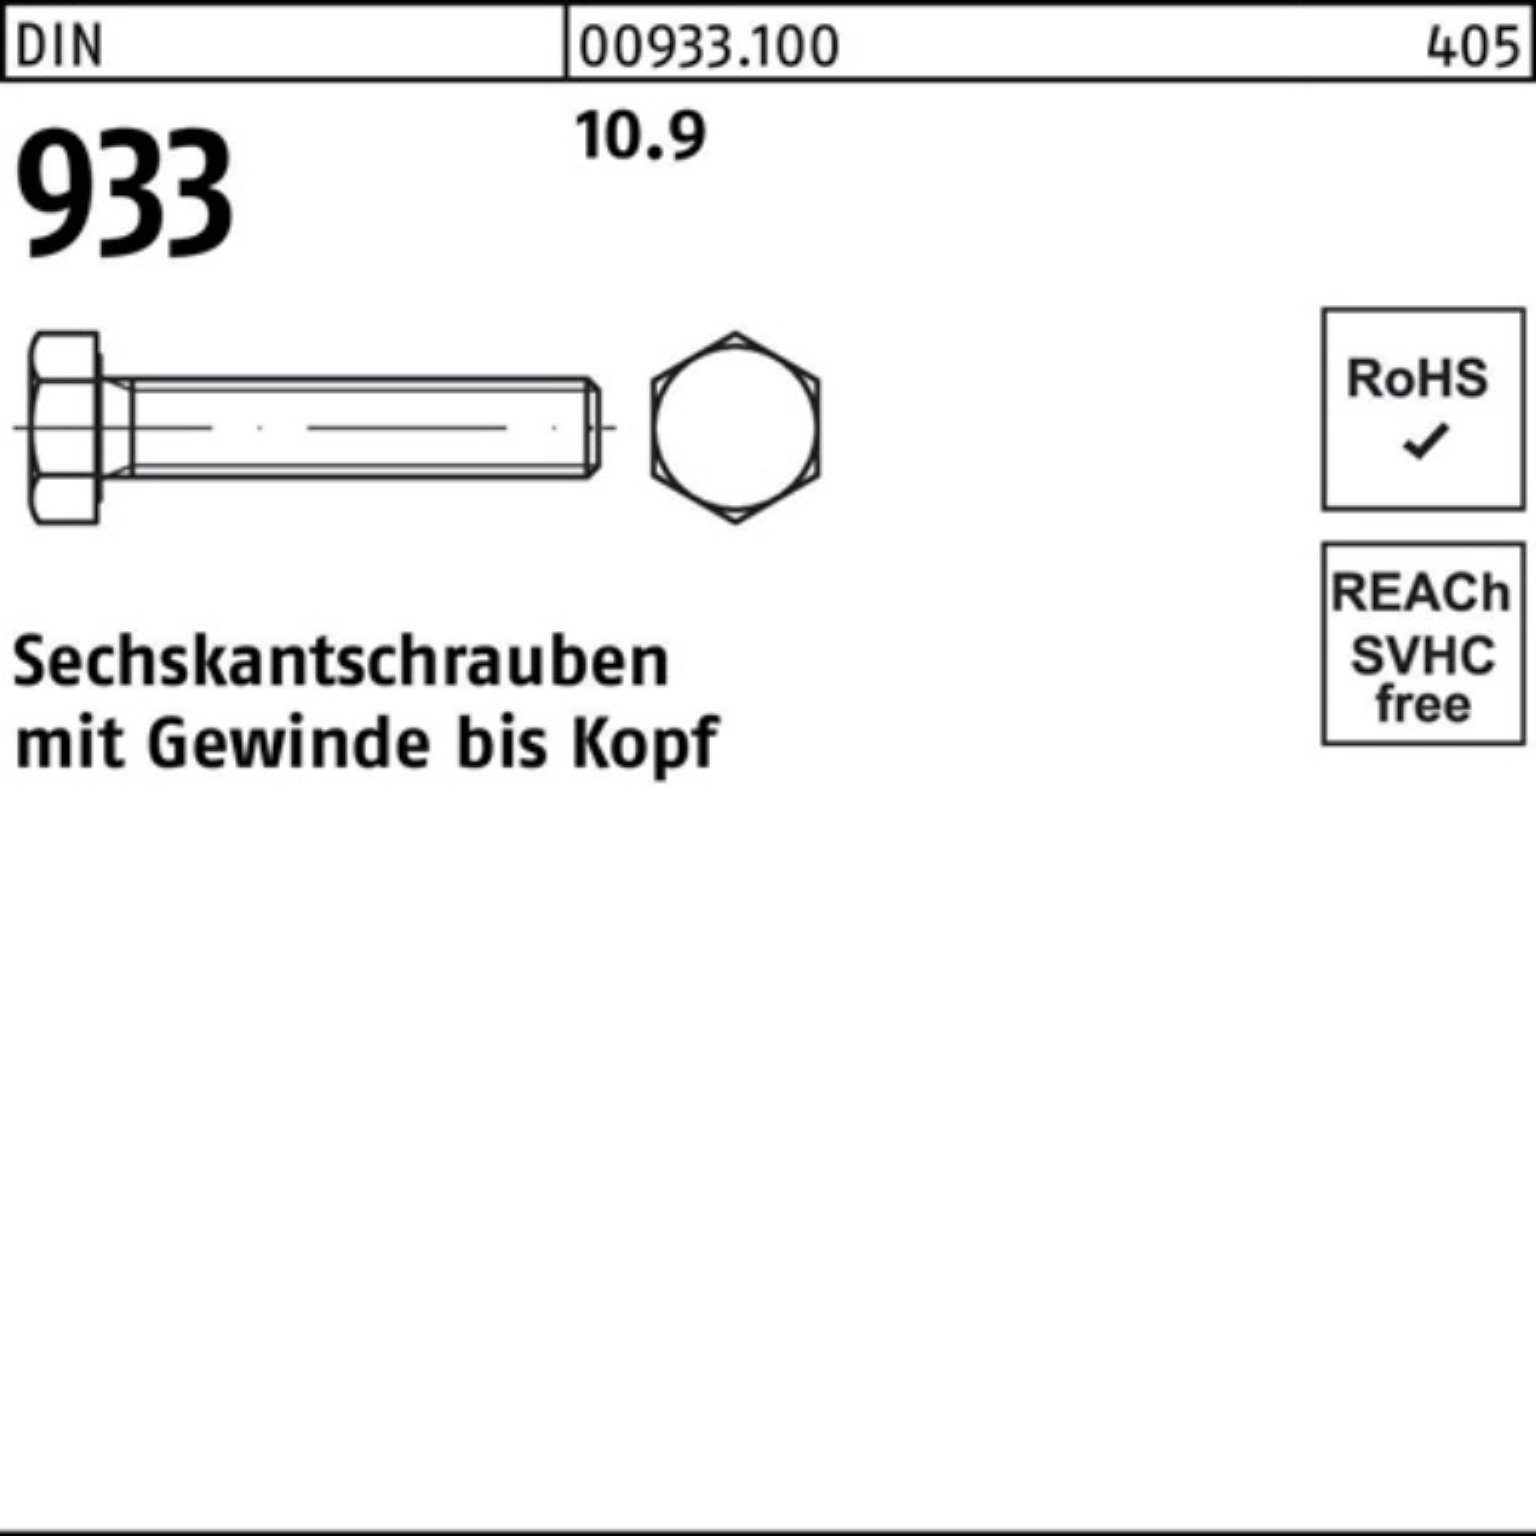 Sechskantschraube Sechskantschraube Pack 933 10.9 933 Stück Reyher 75 VG DIN 50 100er M14x DIN